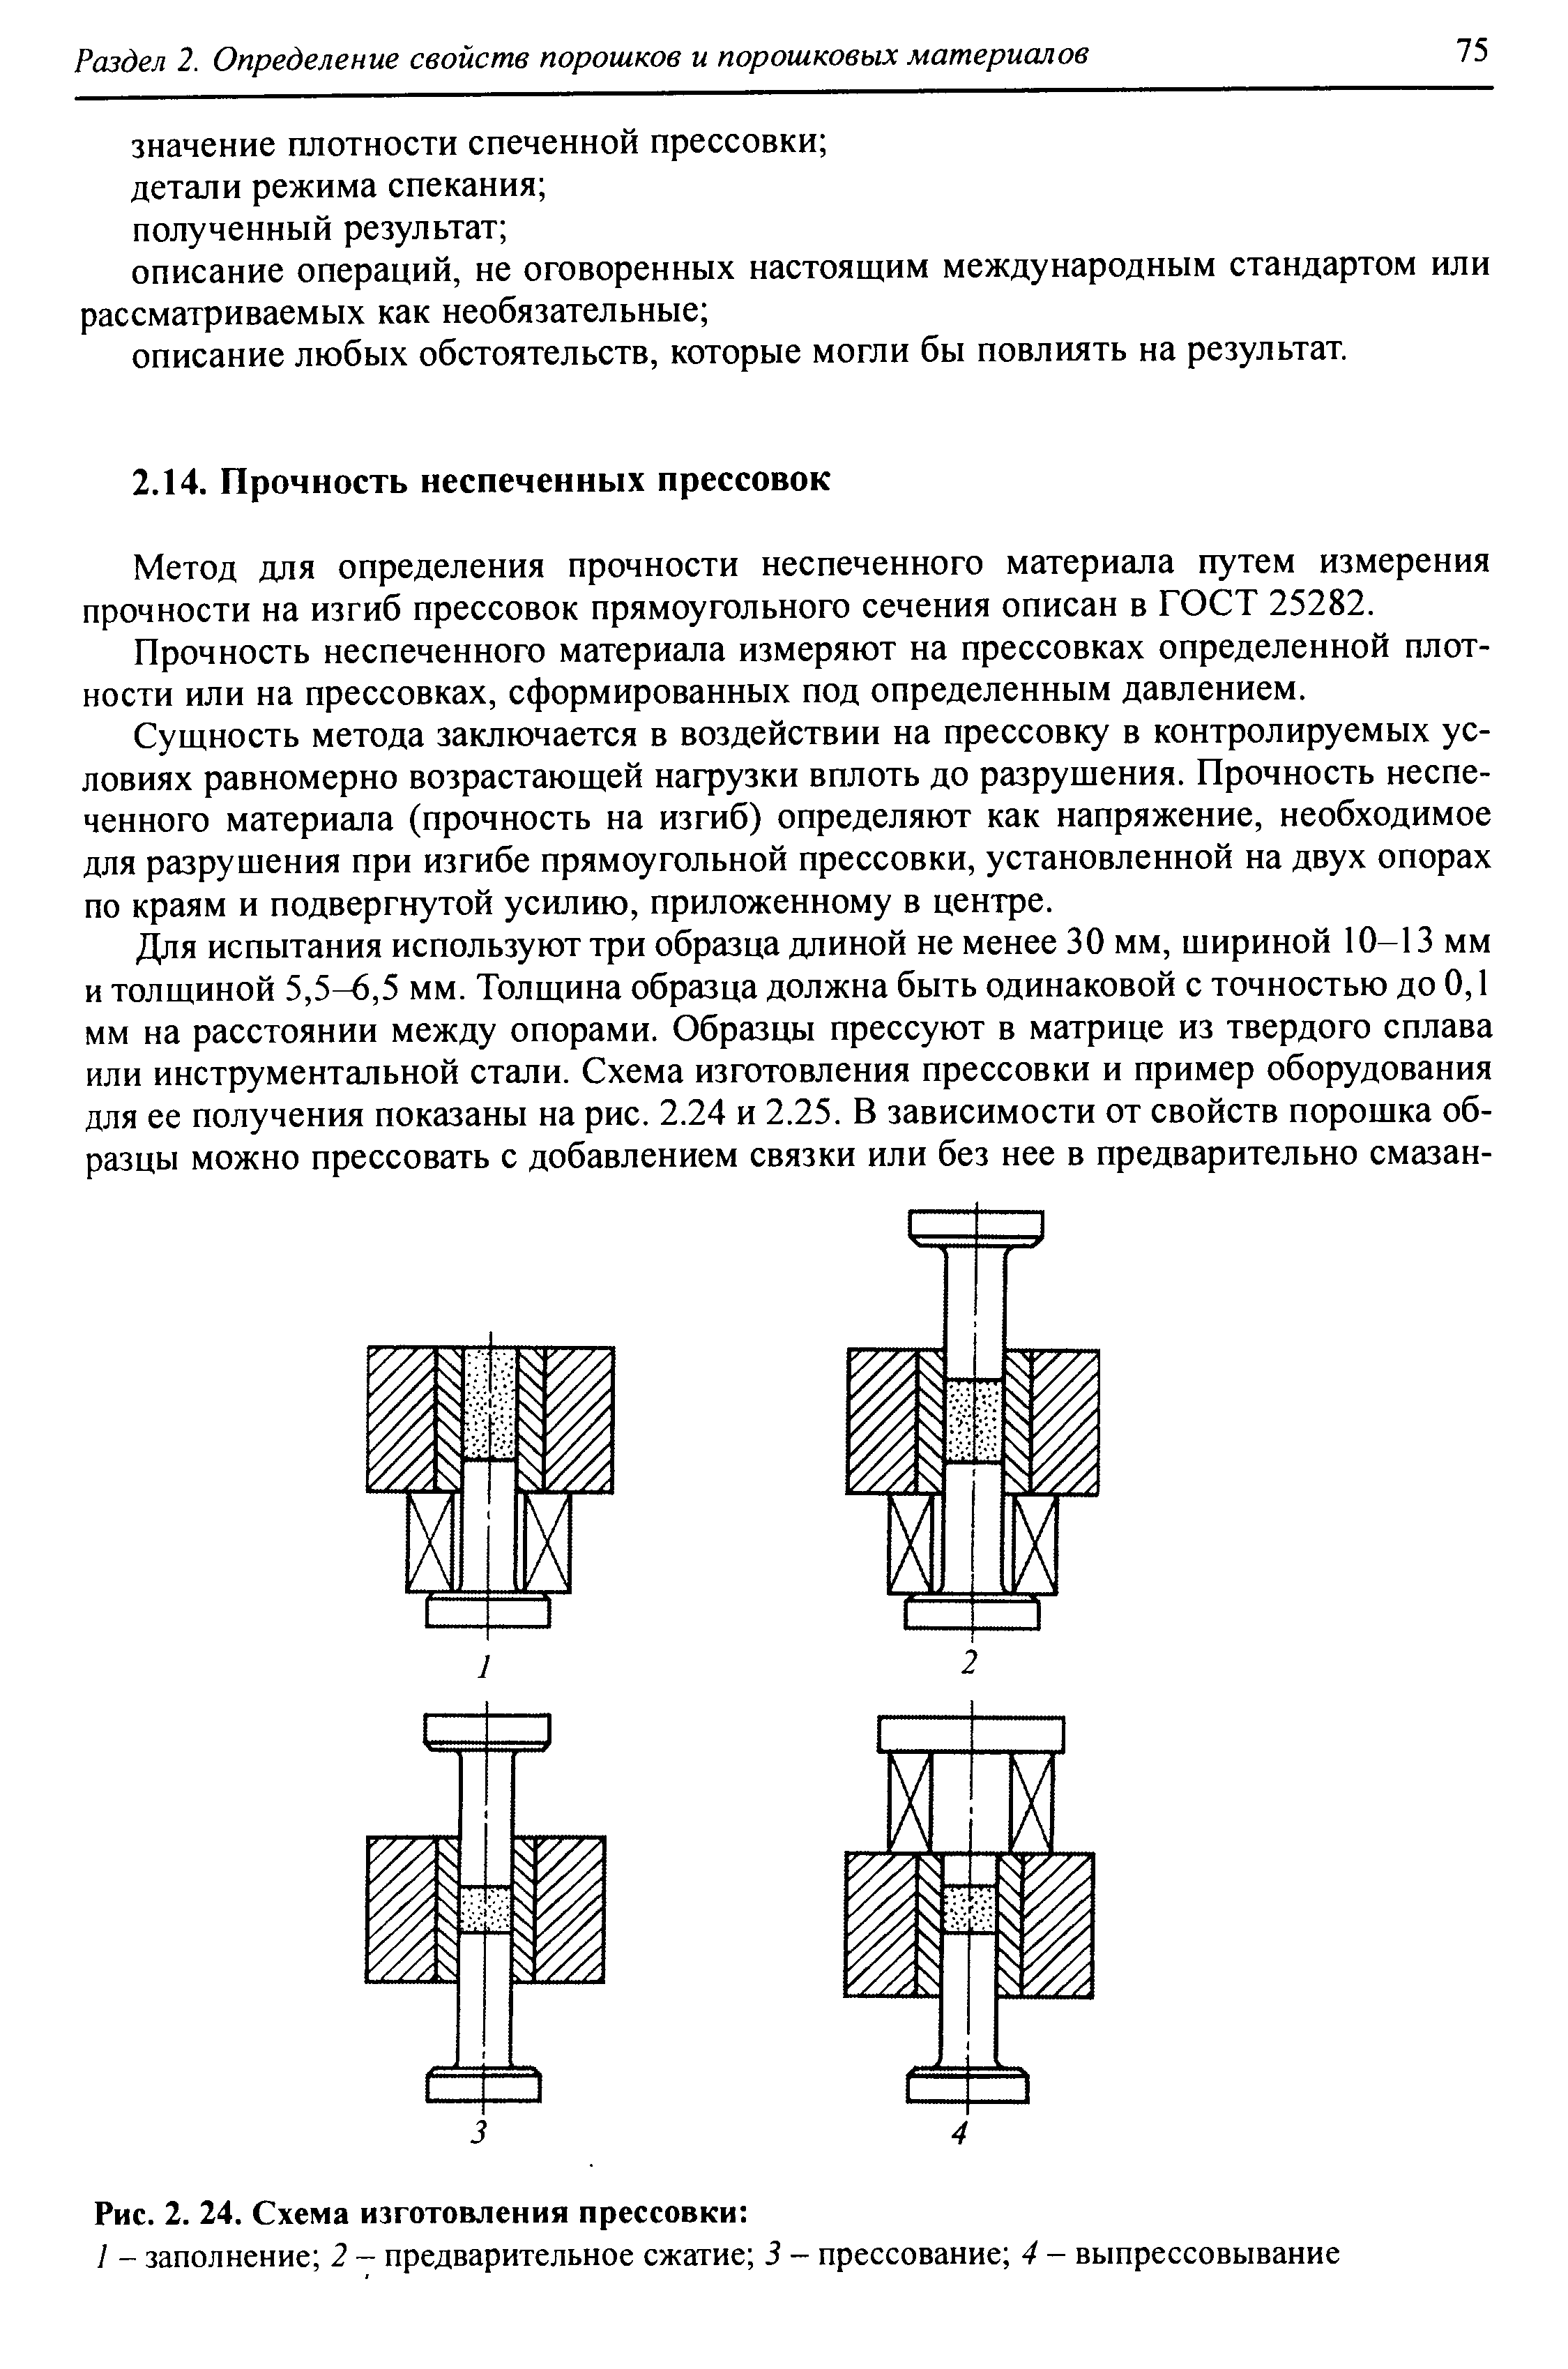 Метод для определения прочности неспеченного материала путем измерения прочности на изгиб прессовок прямоугольного сечения описан в ГОСТ 25282.